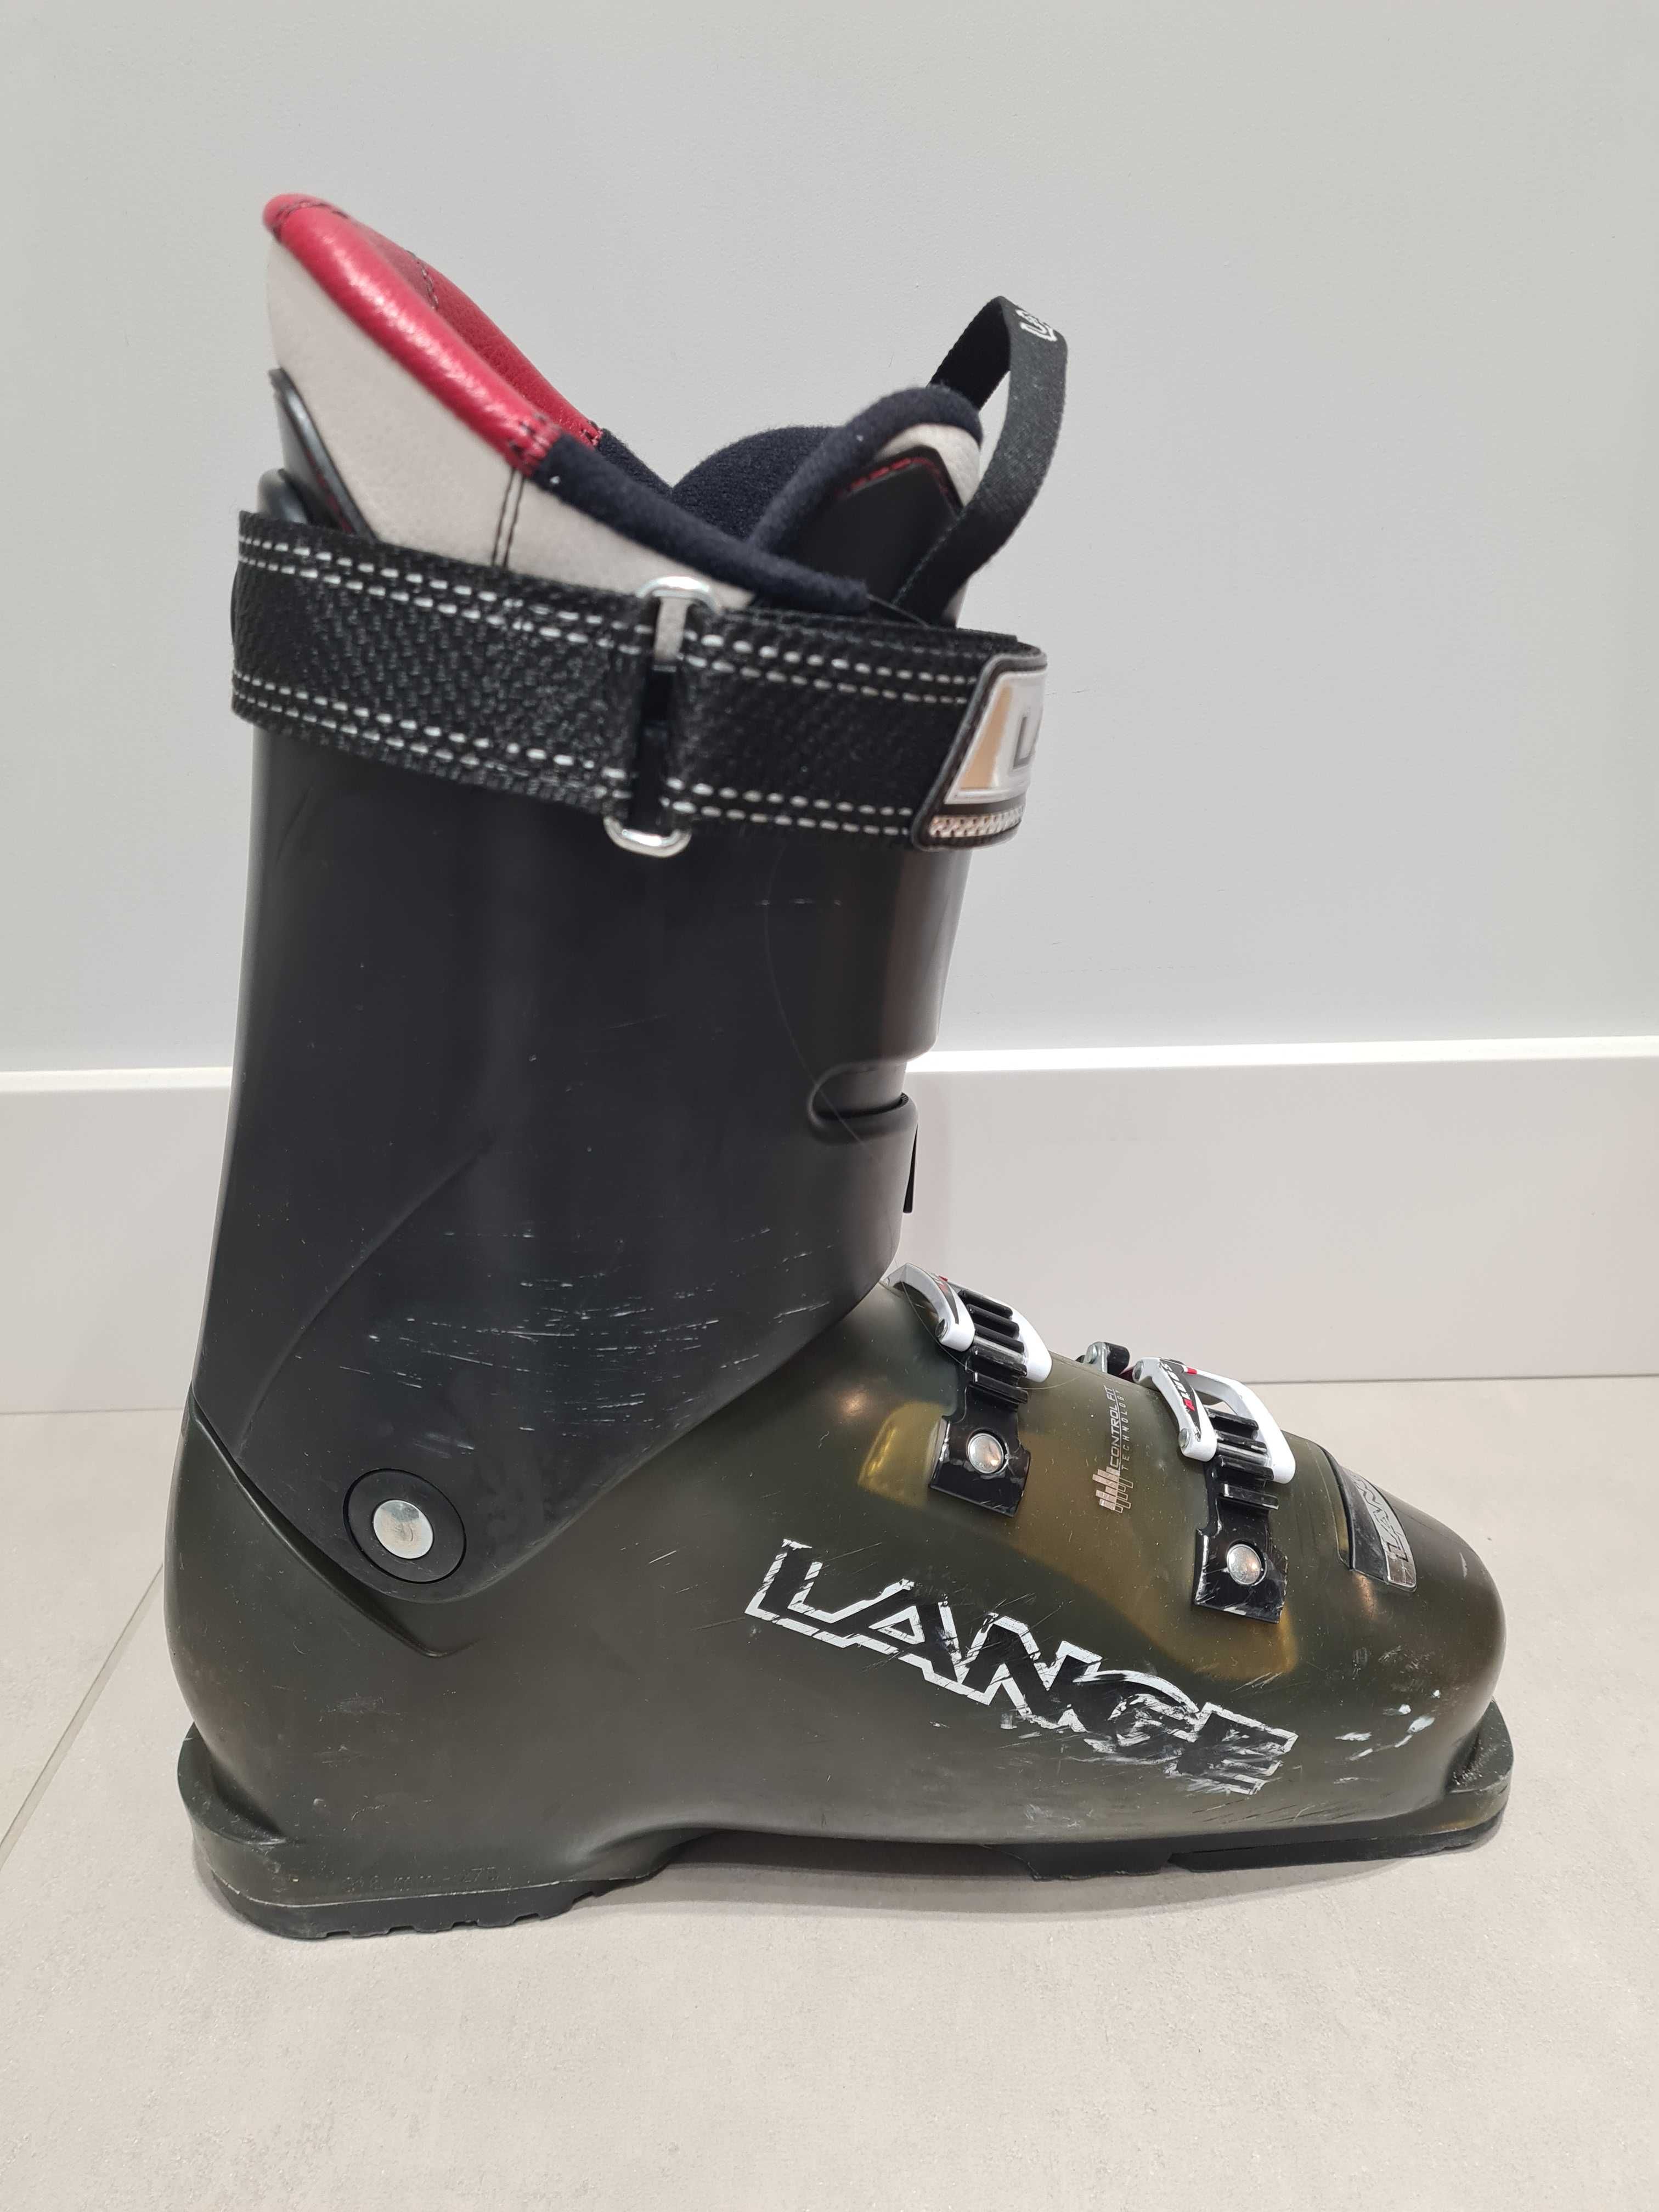 Buty narciarskie Lange RX 100 roz. 27-27.5